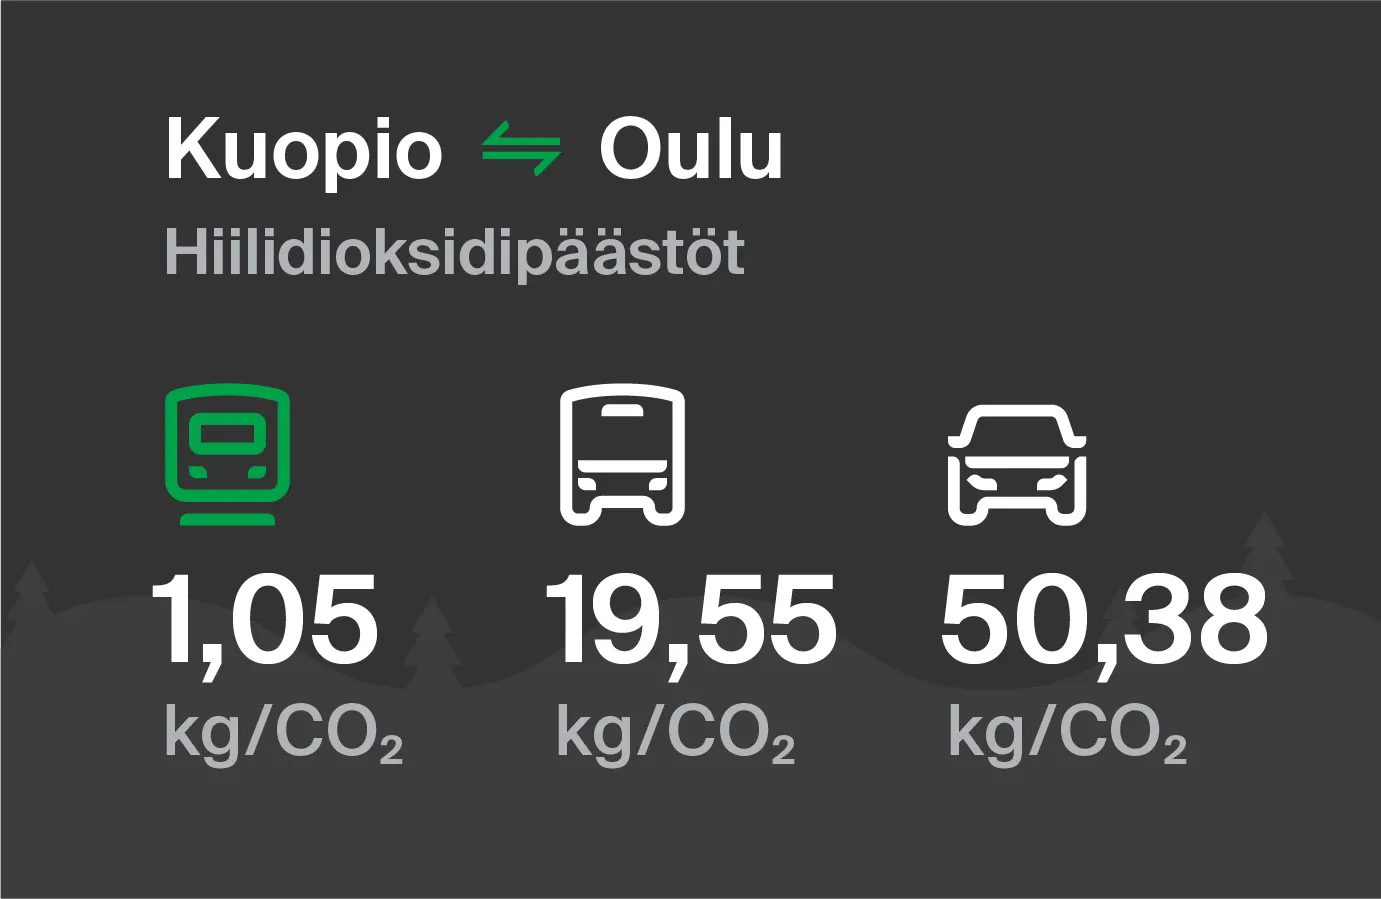 Koldioxidutsläpp från Kuopio till Uleåborg genom olika transportsätt: med tåg 1,05 kg/CO2, med buss 19,55 kg/CO2 och med bil 50,38 kg/CO2.